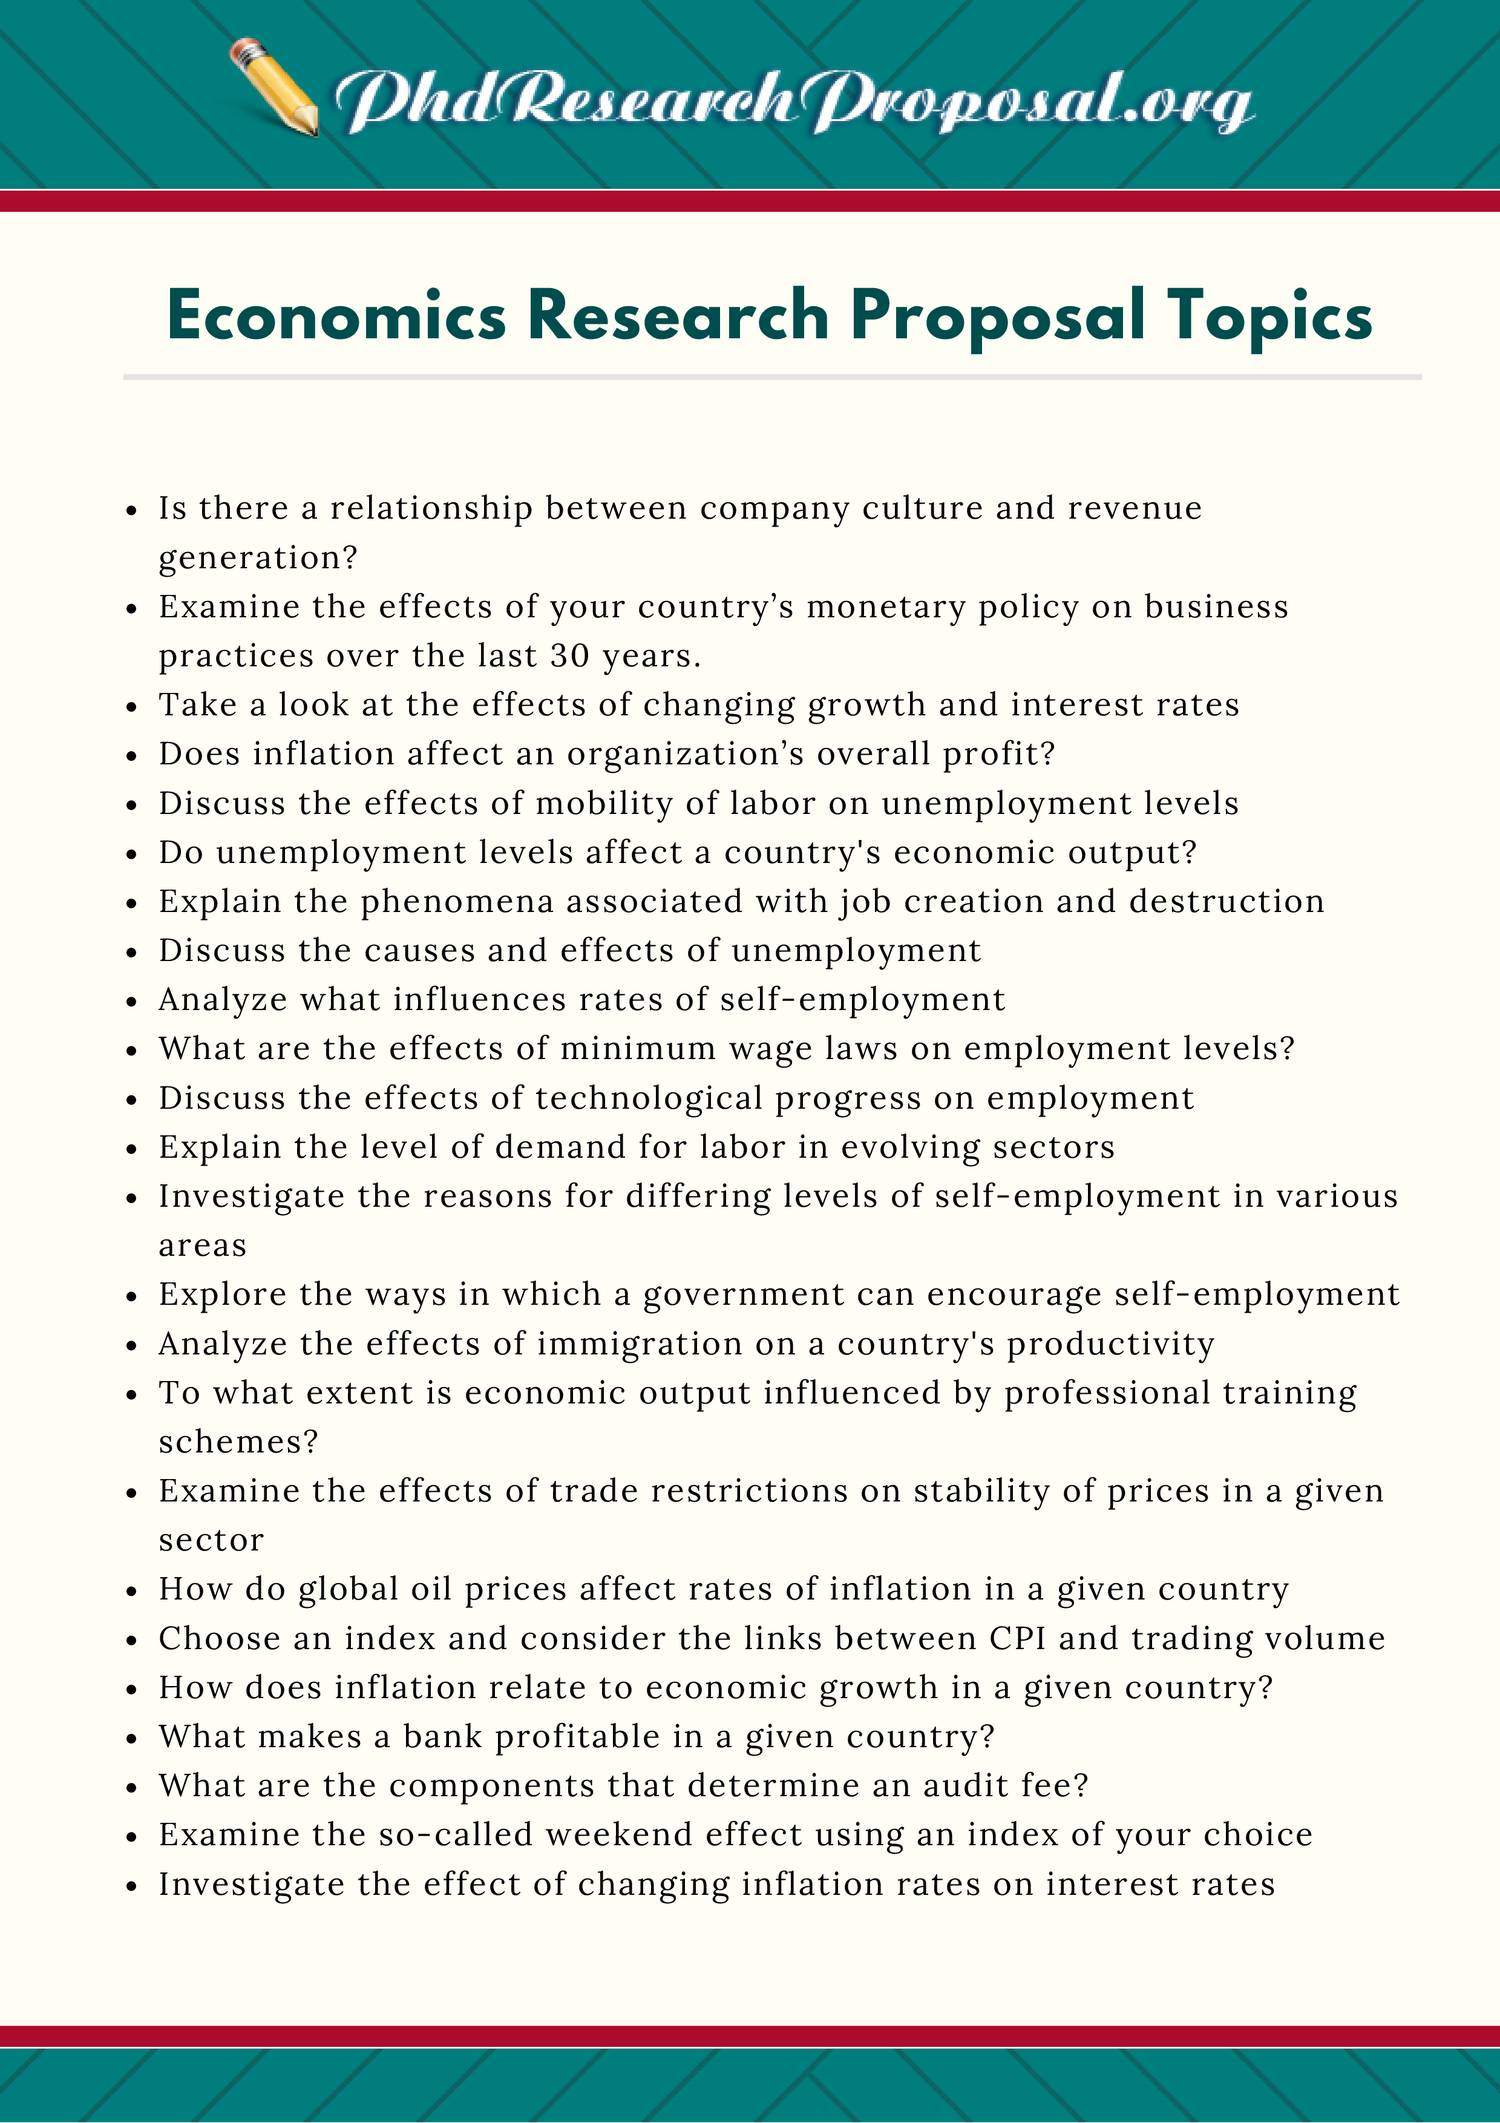 economics research proposal topics